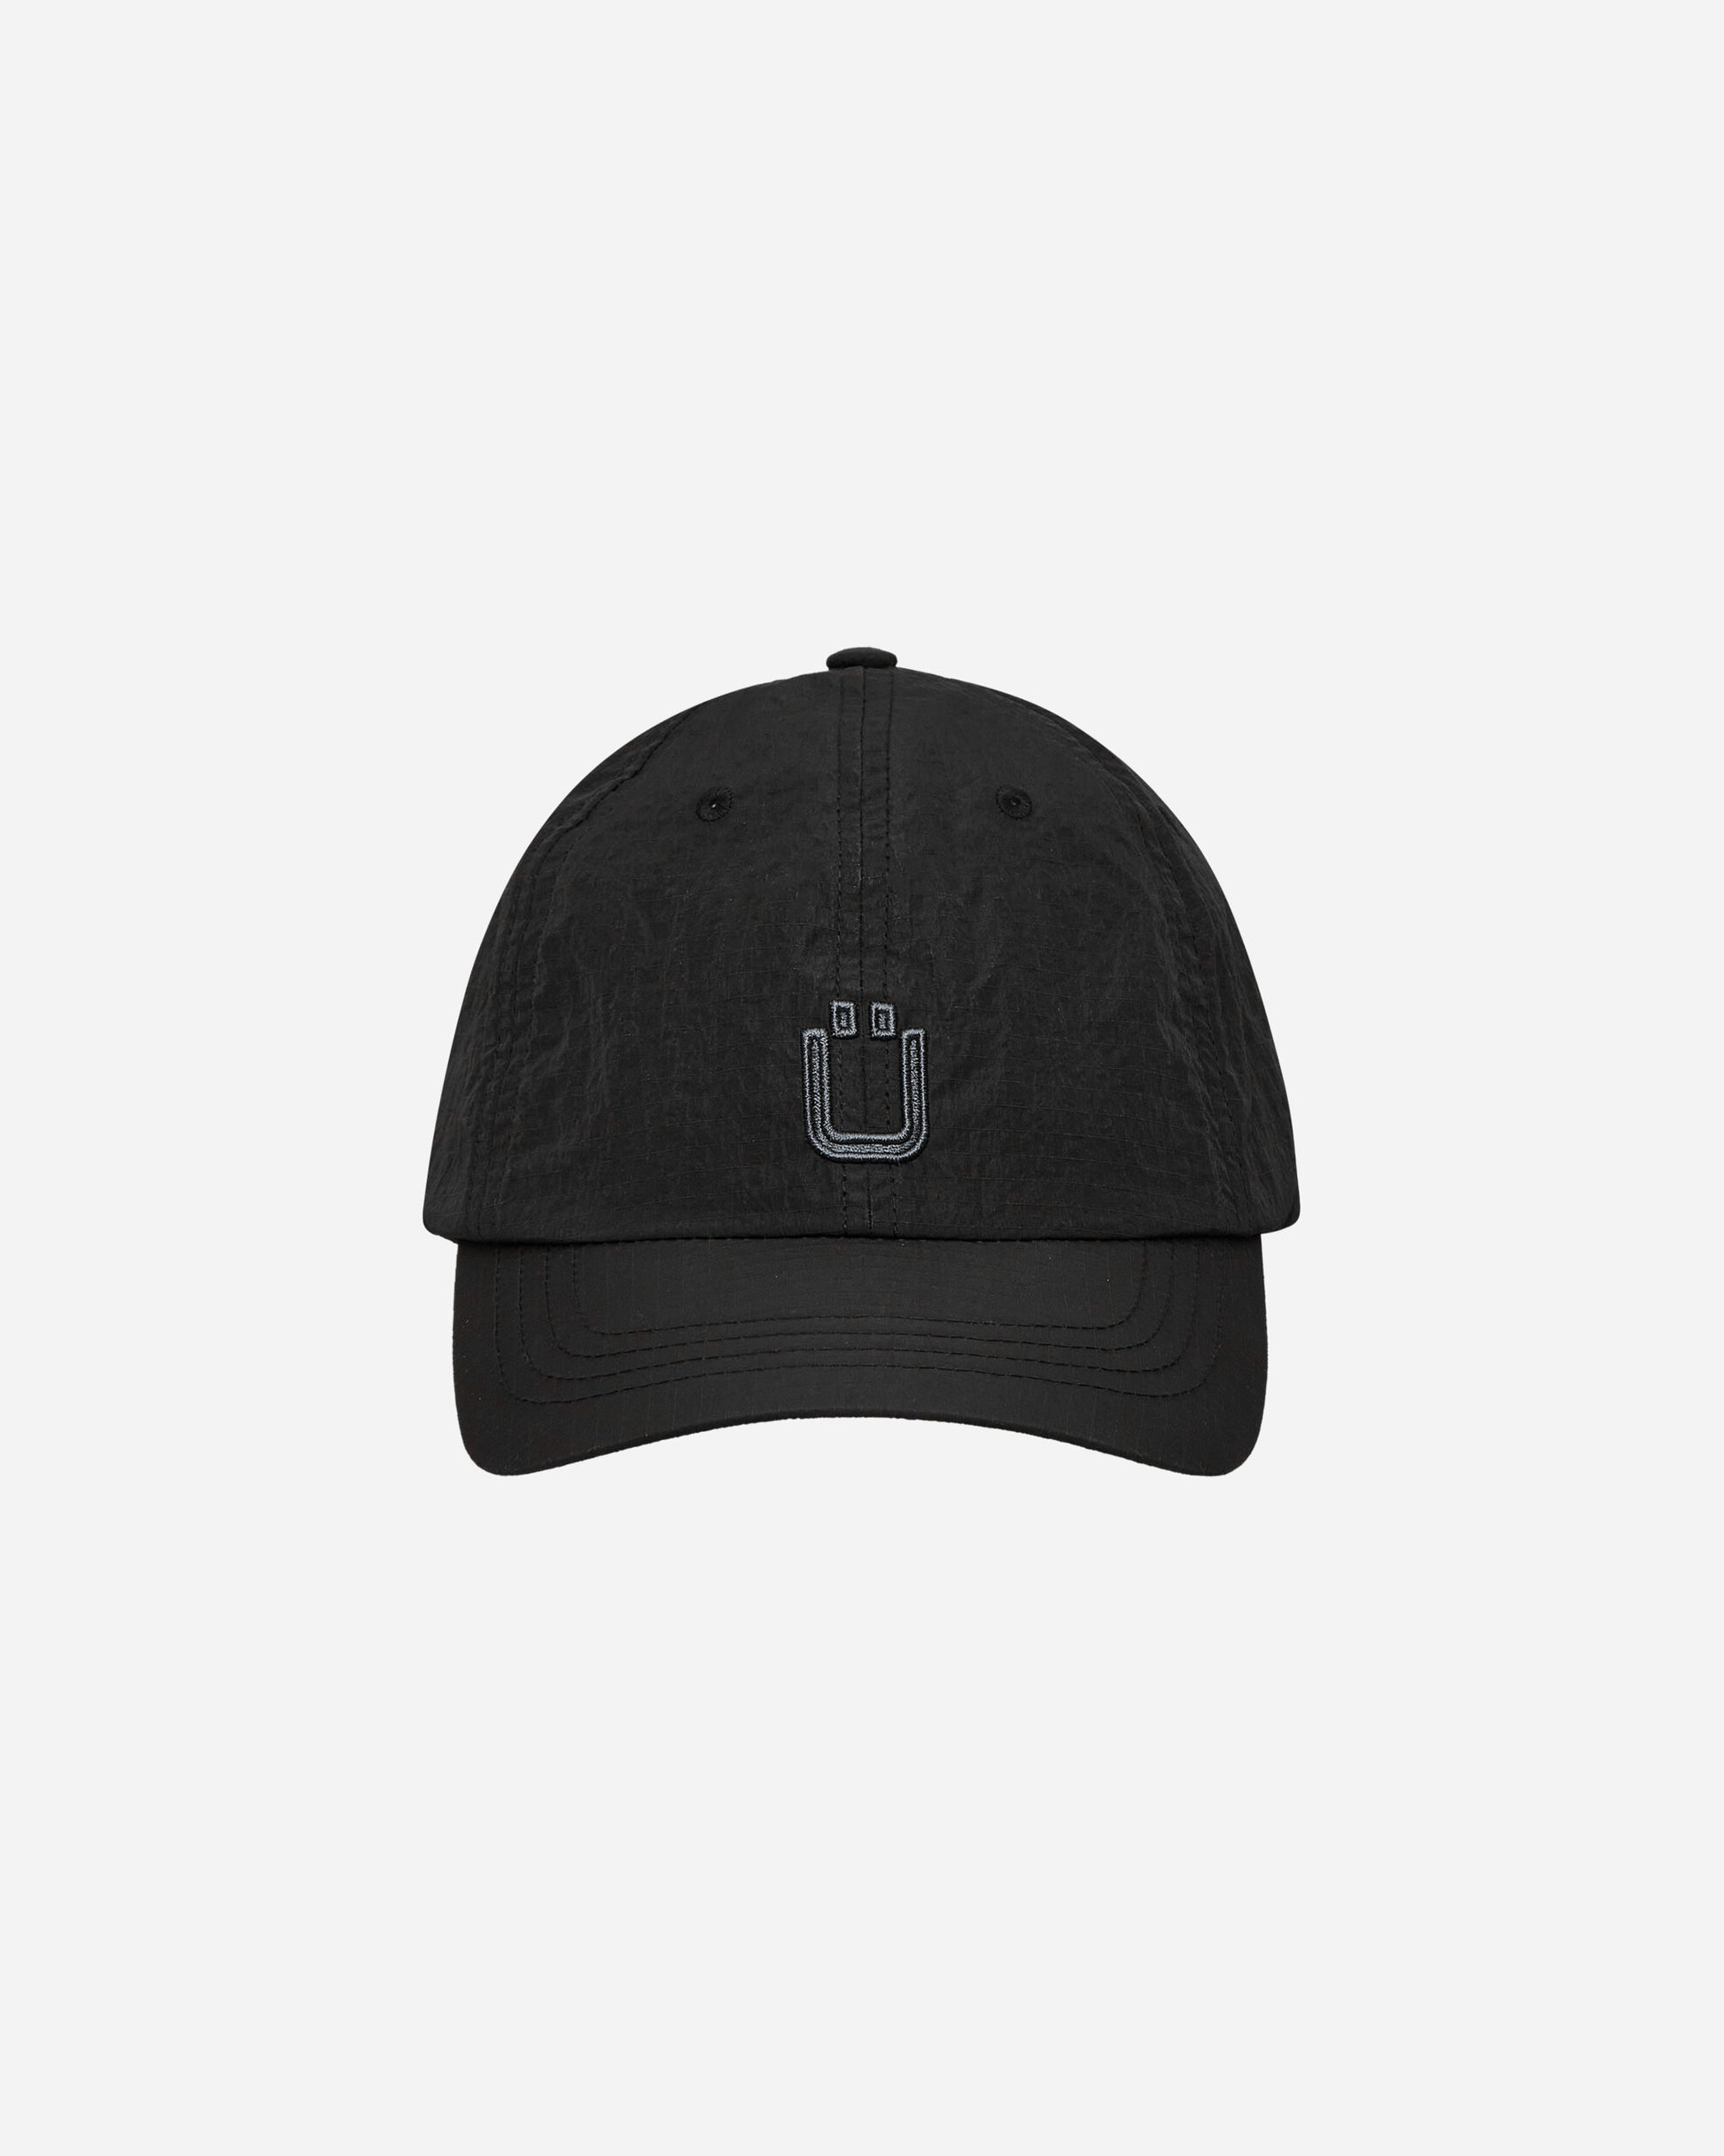 Unaffected Logo Ball Cap Black Hats Caps UN24SSBC02 BLACK